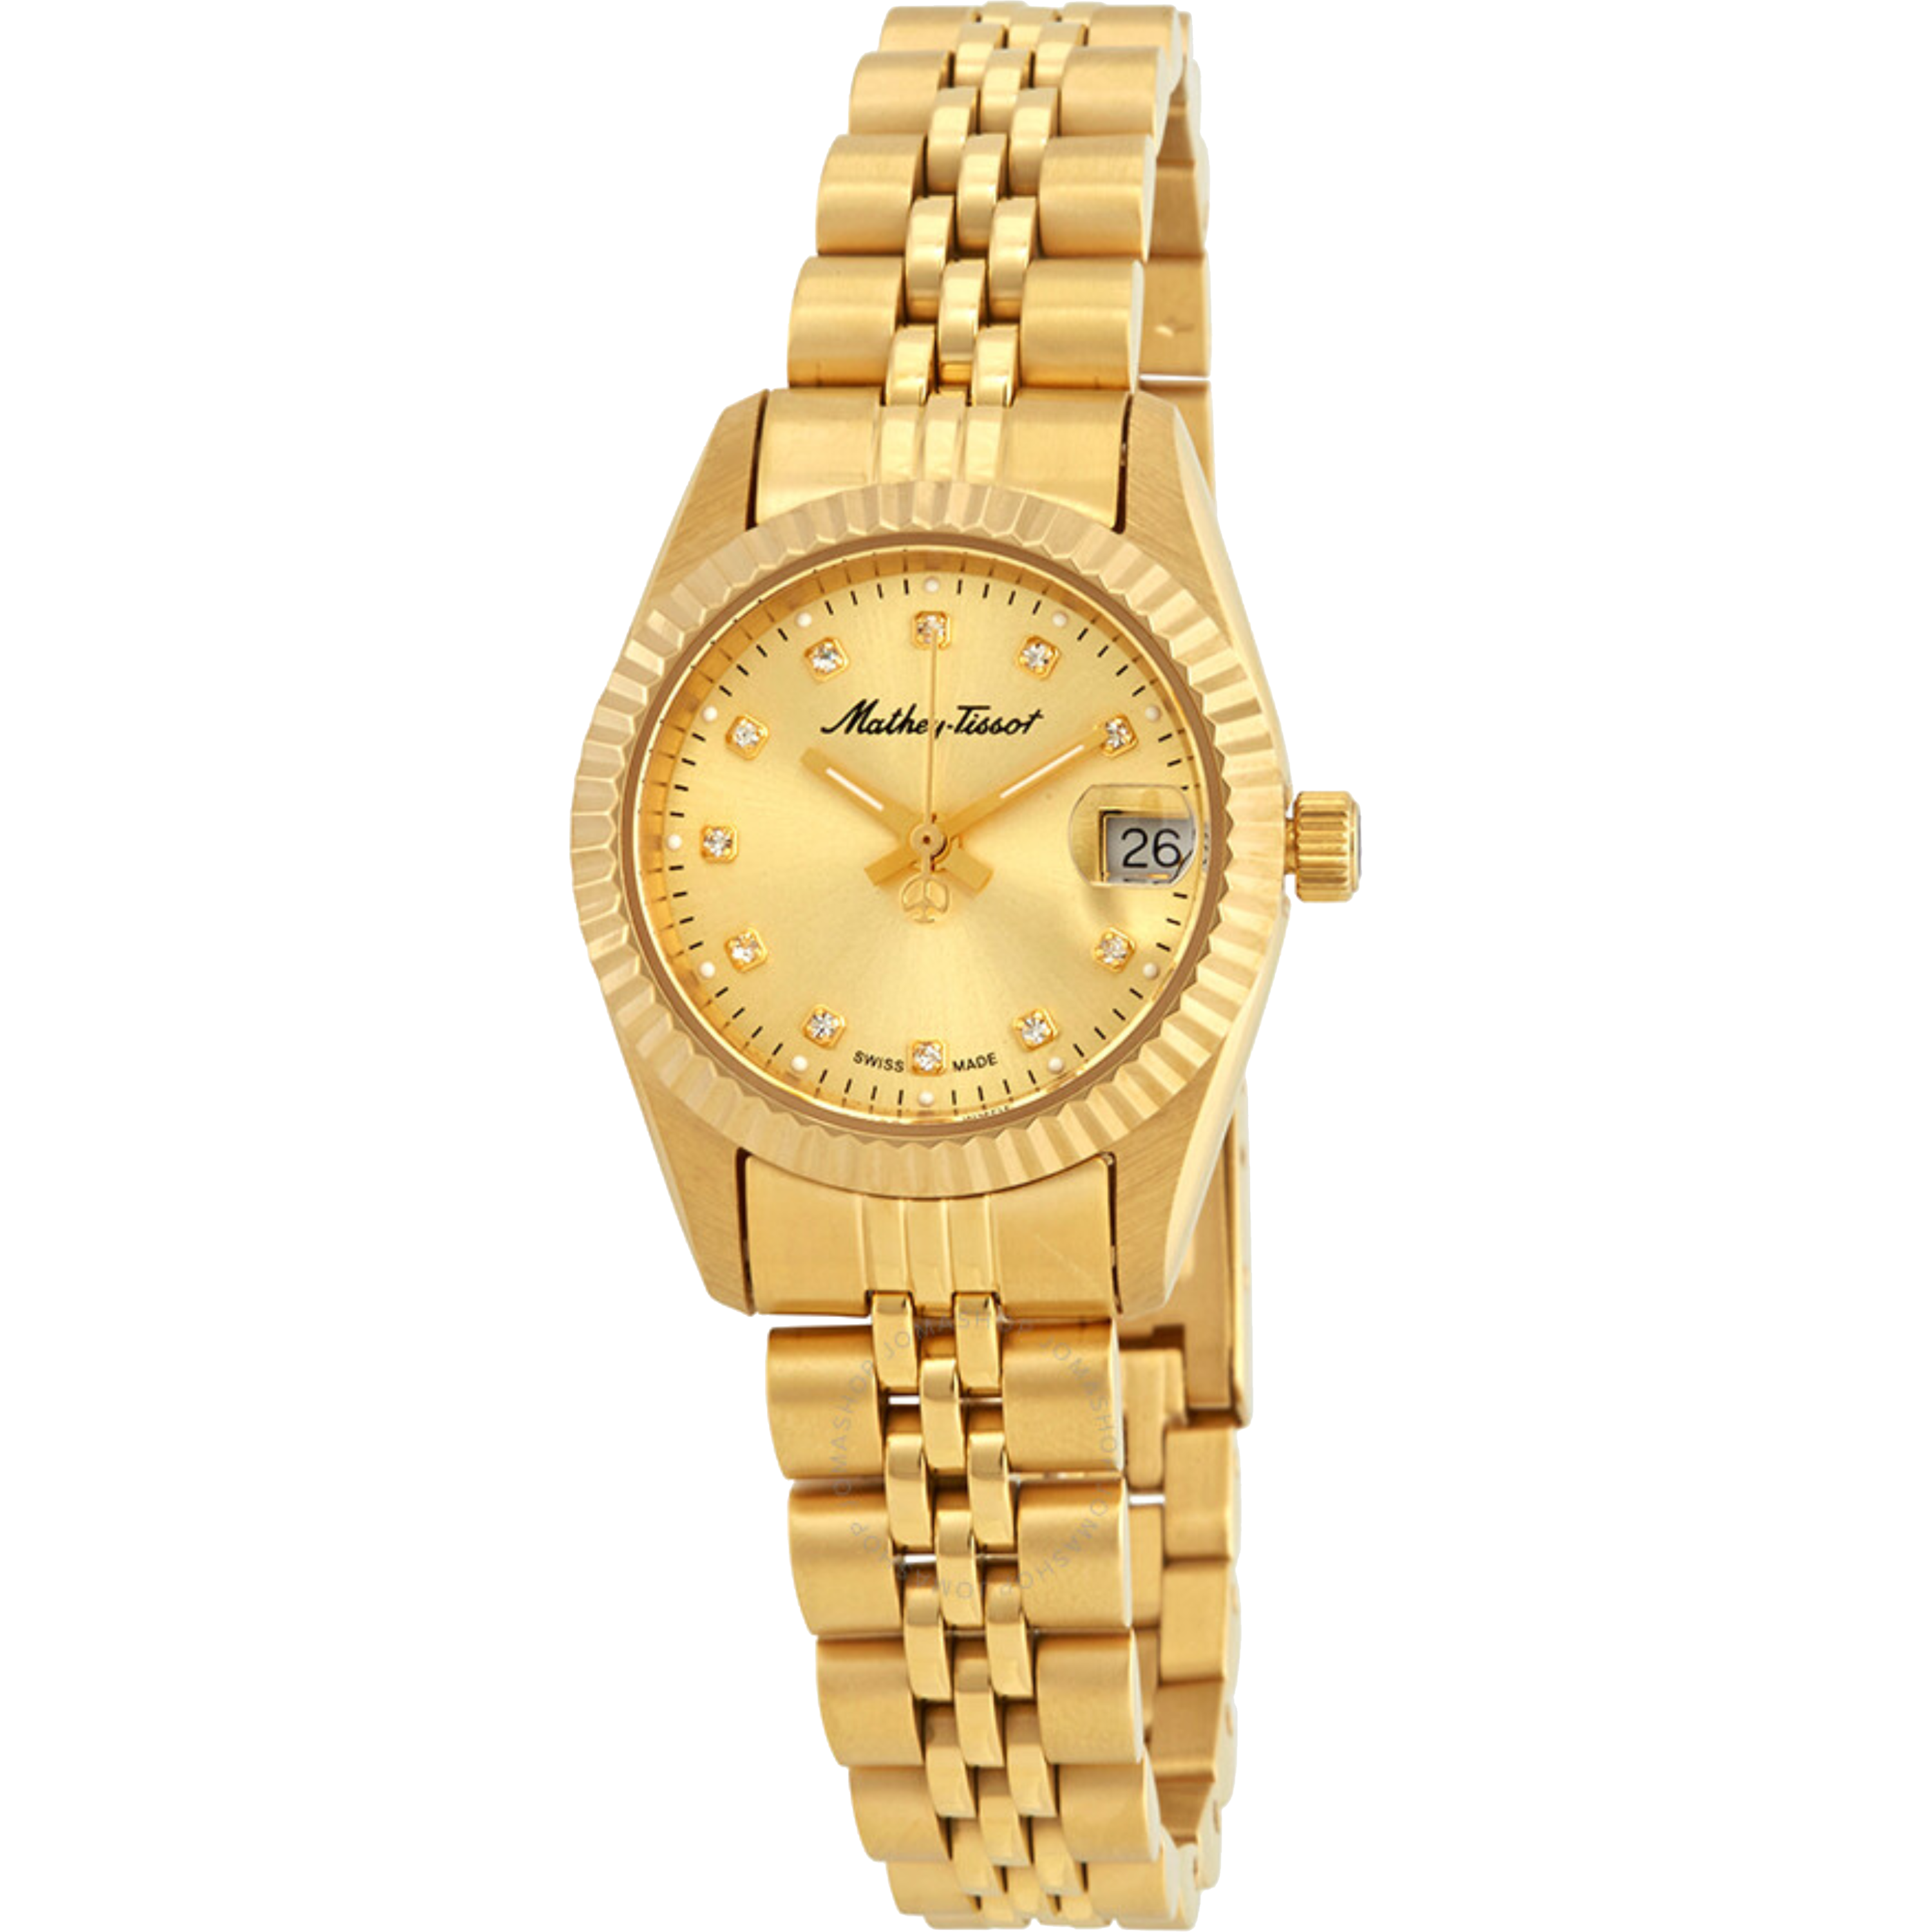 שעון יד לאישה Mathey Tissot D710PDI 26mm צבע זהב - אחריות לשנה ע"י היבואן